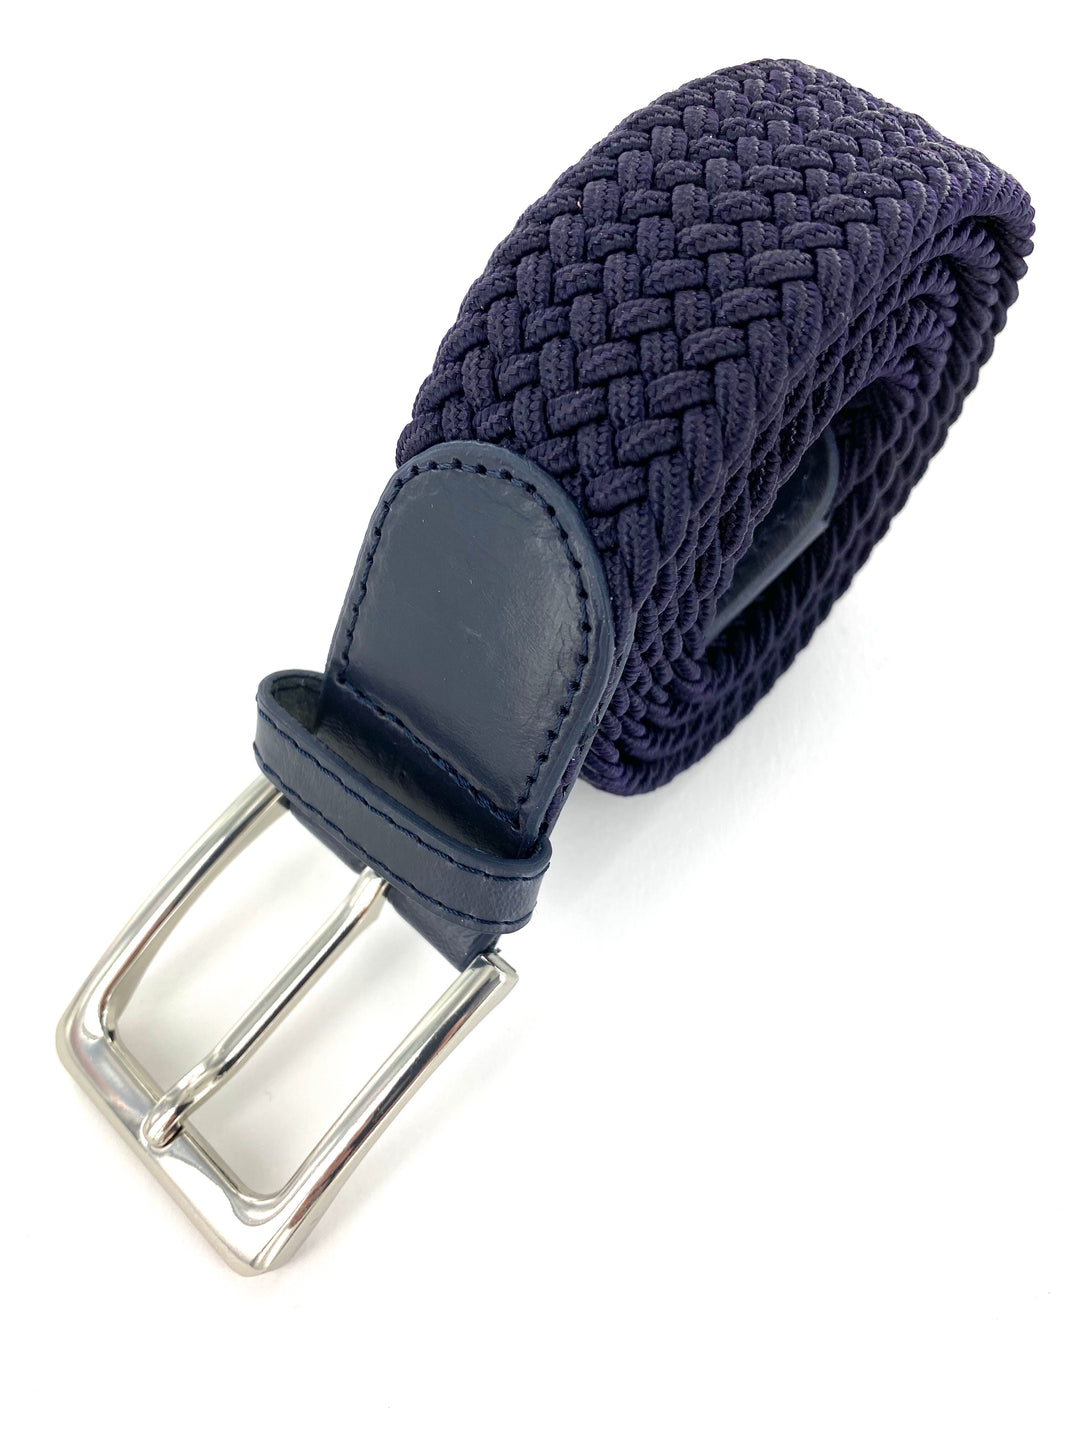 Ceinture élastique et cuir bleu marine. Plus besoin de réglages avec les ceintures élastiques, elles s'adaptent facilement. Les ceintures élastiques sont très faciles à porter, avec un jean pour un style décontractée mais aussi bien pour un style habillé.